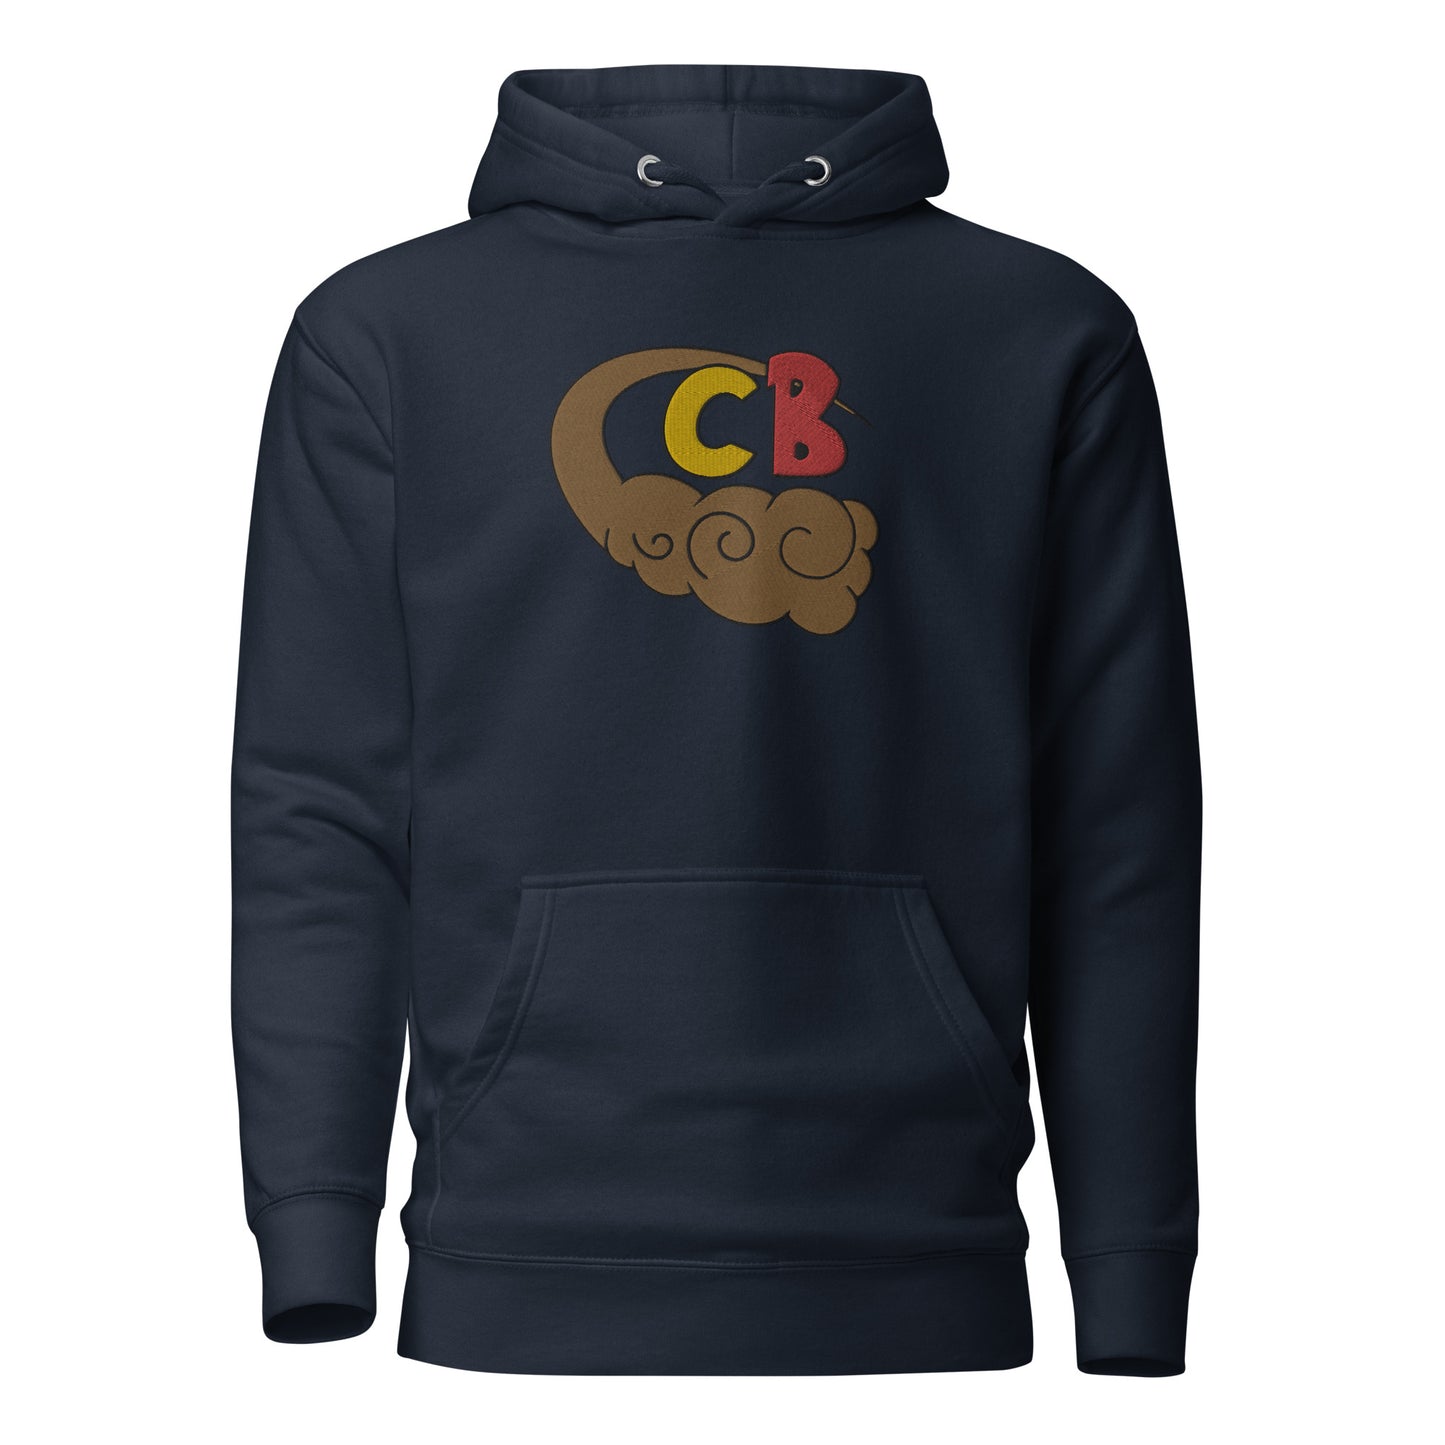 CB DBZ/DB Sweatshirt